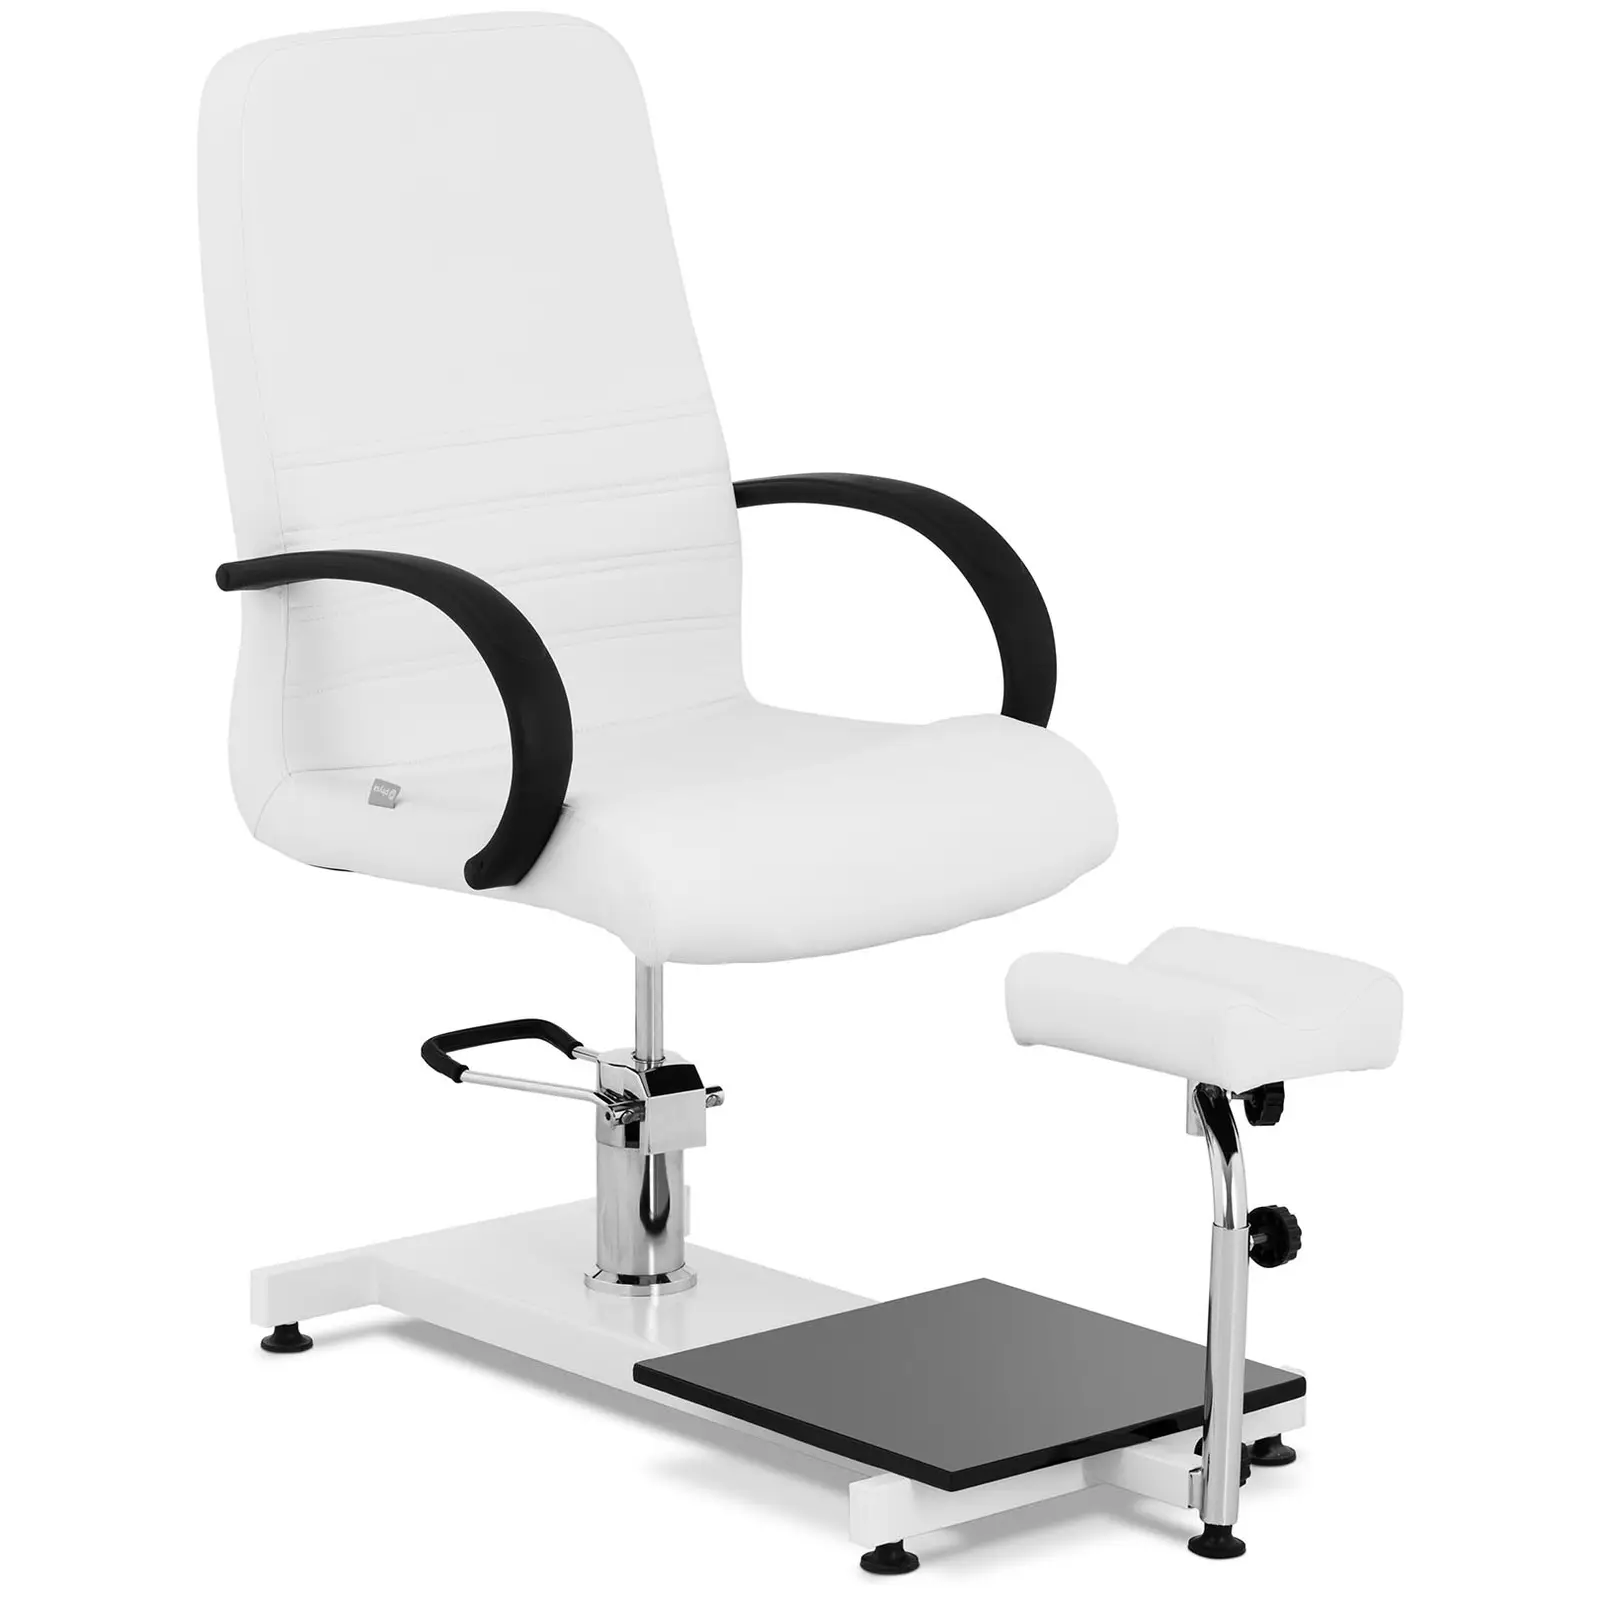 Fotvårdsstol med fotbad - 118 x 68 x 106 cm - 150 kg - White